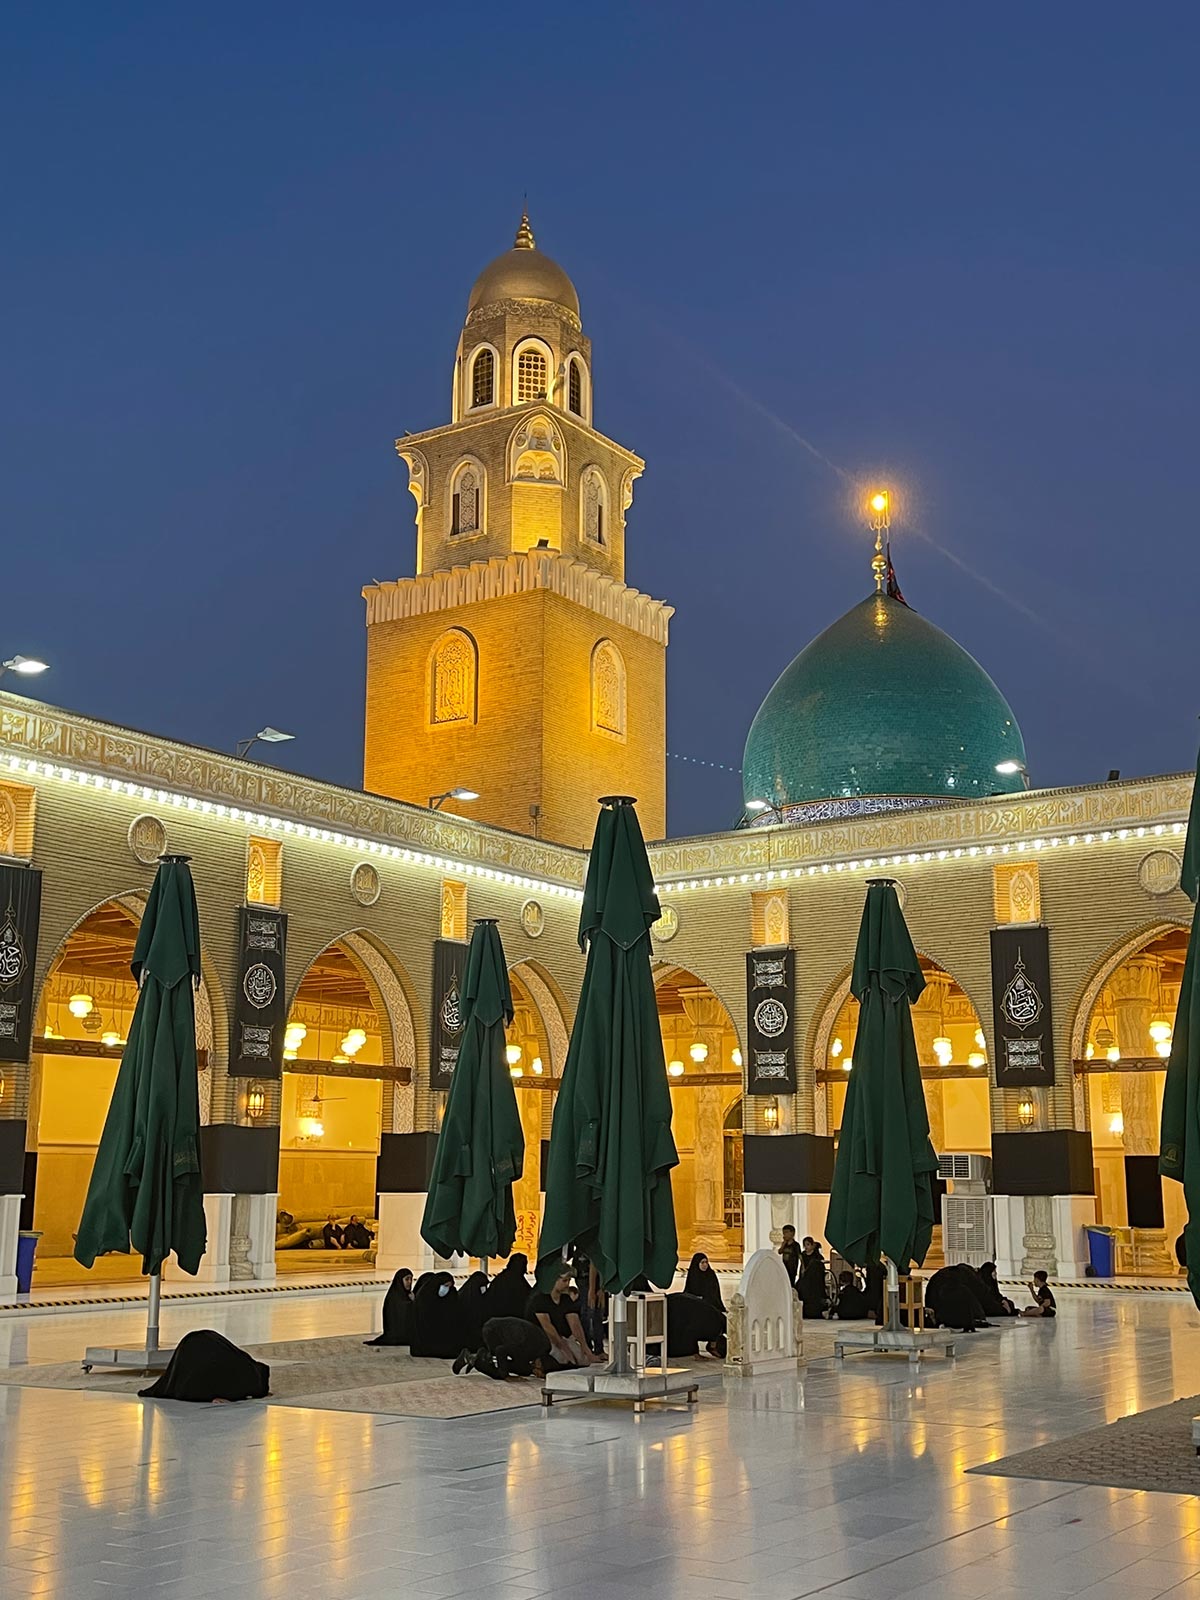 Kufa Mosque, Shrines of Muslim ibn Aqeel and Hani ibn Urwa, Kufa